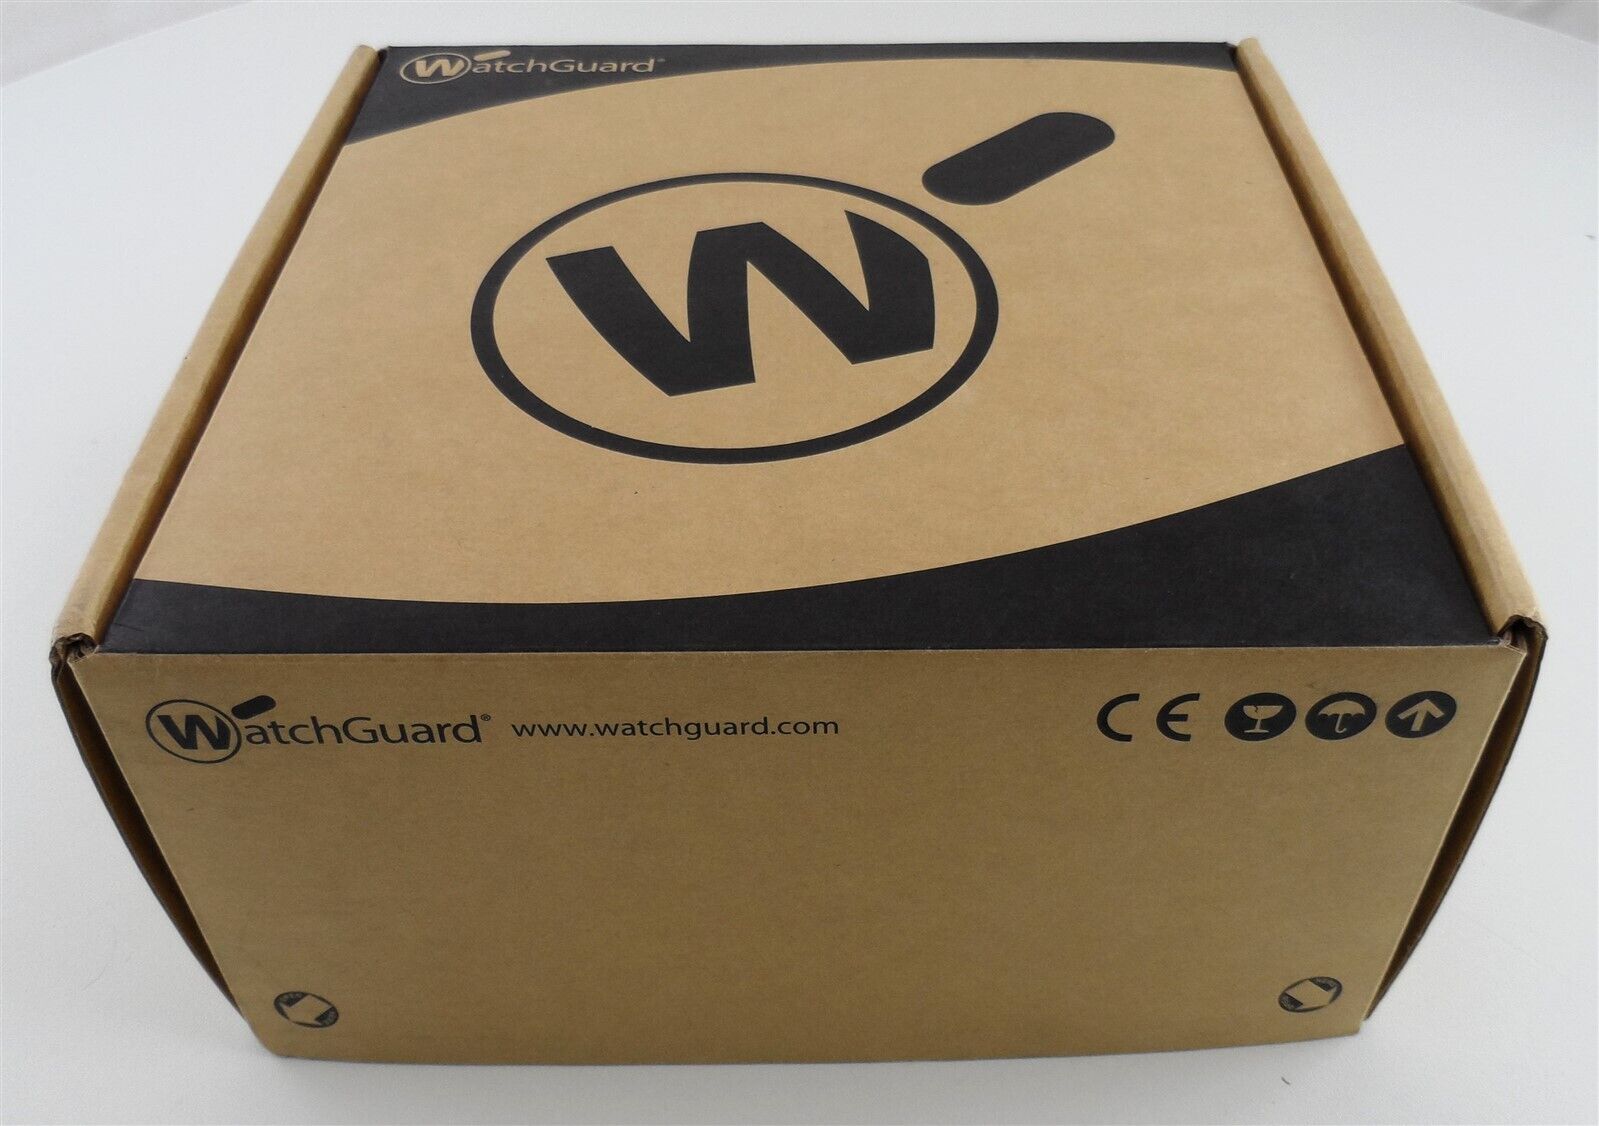 WatchGuard WGT40001-US FireBox Model T40 FS4AE5 New in Box